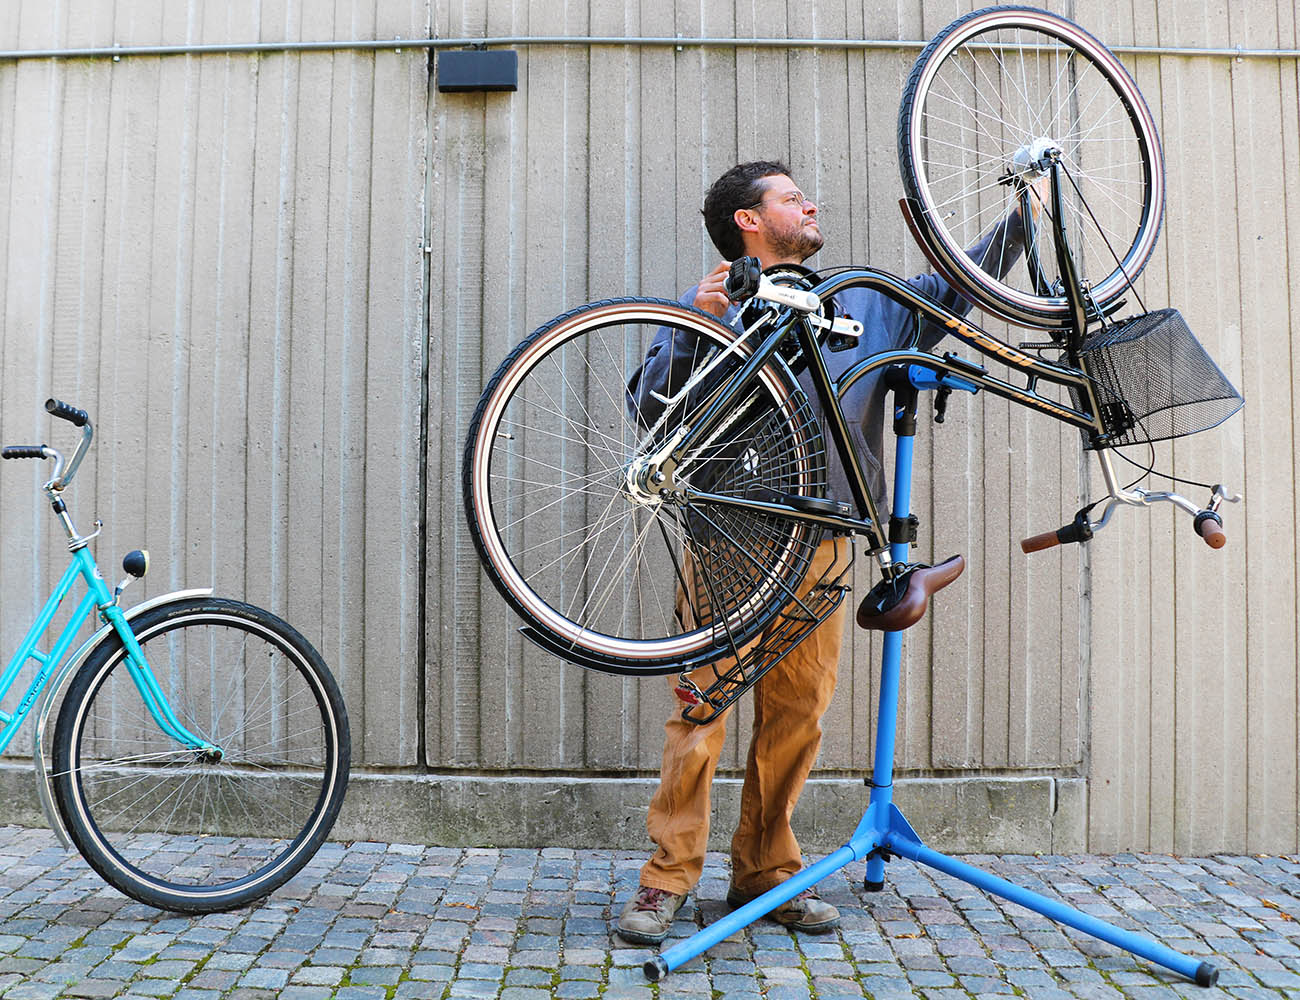 En kille med blå tröja och bruna byxor står vid en cykel som hänger upp och ner på gatan